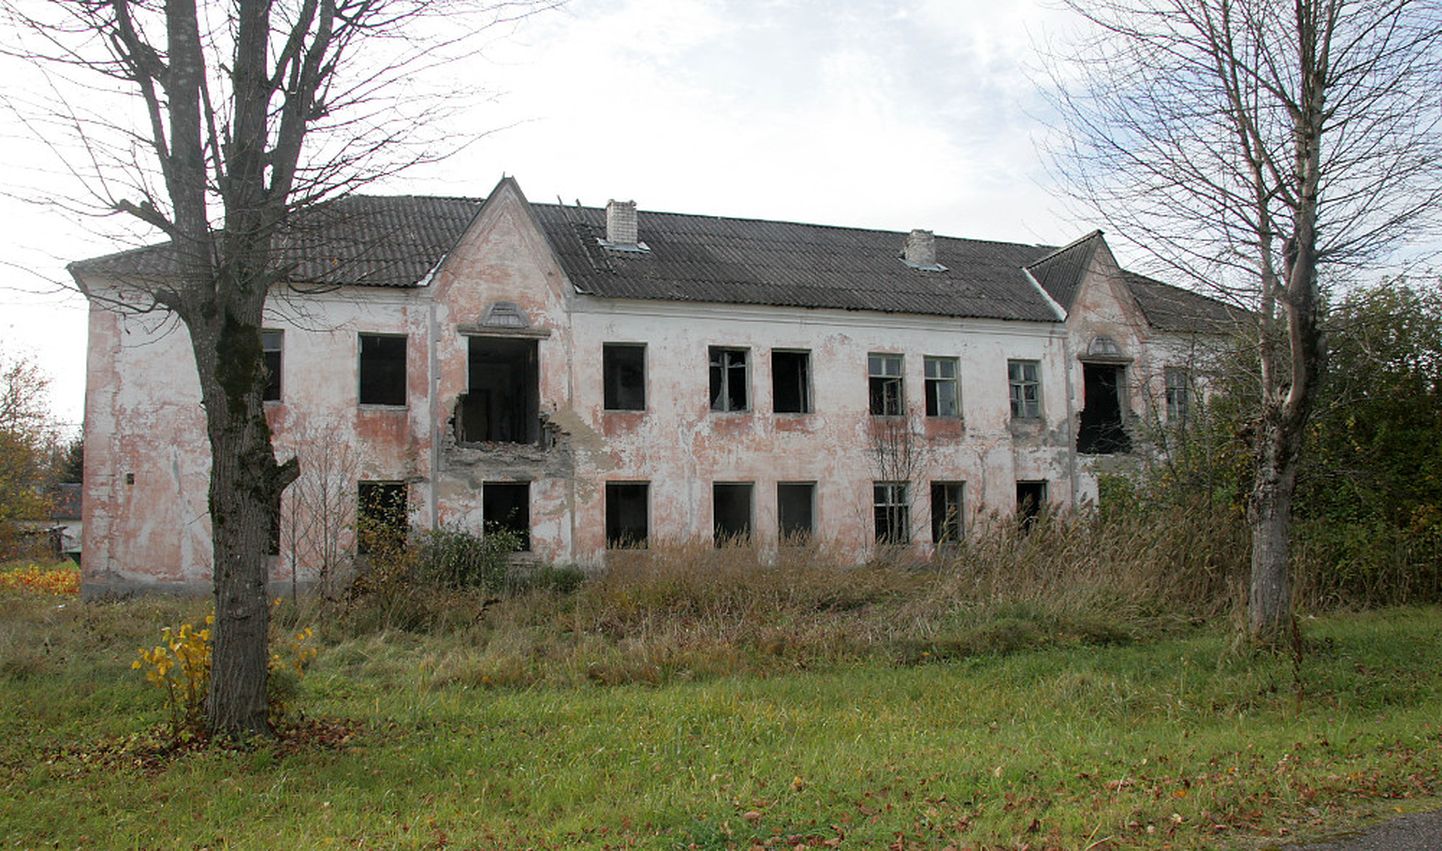 Narva-Jõesuu peab hakkama saama ka selliste hoonetega, millest keegi pole juba aastaid hoolinud.

PEETER LILLEVÄLI